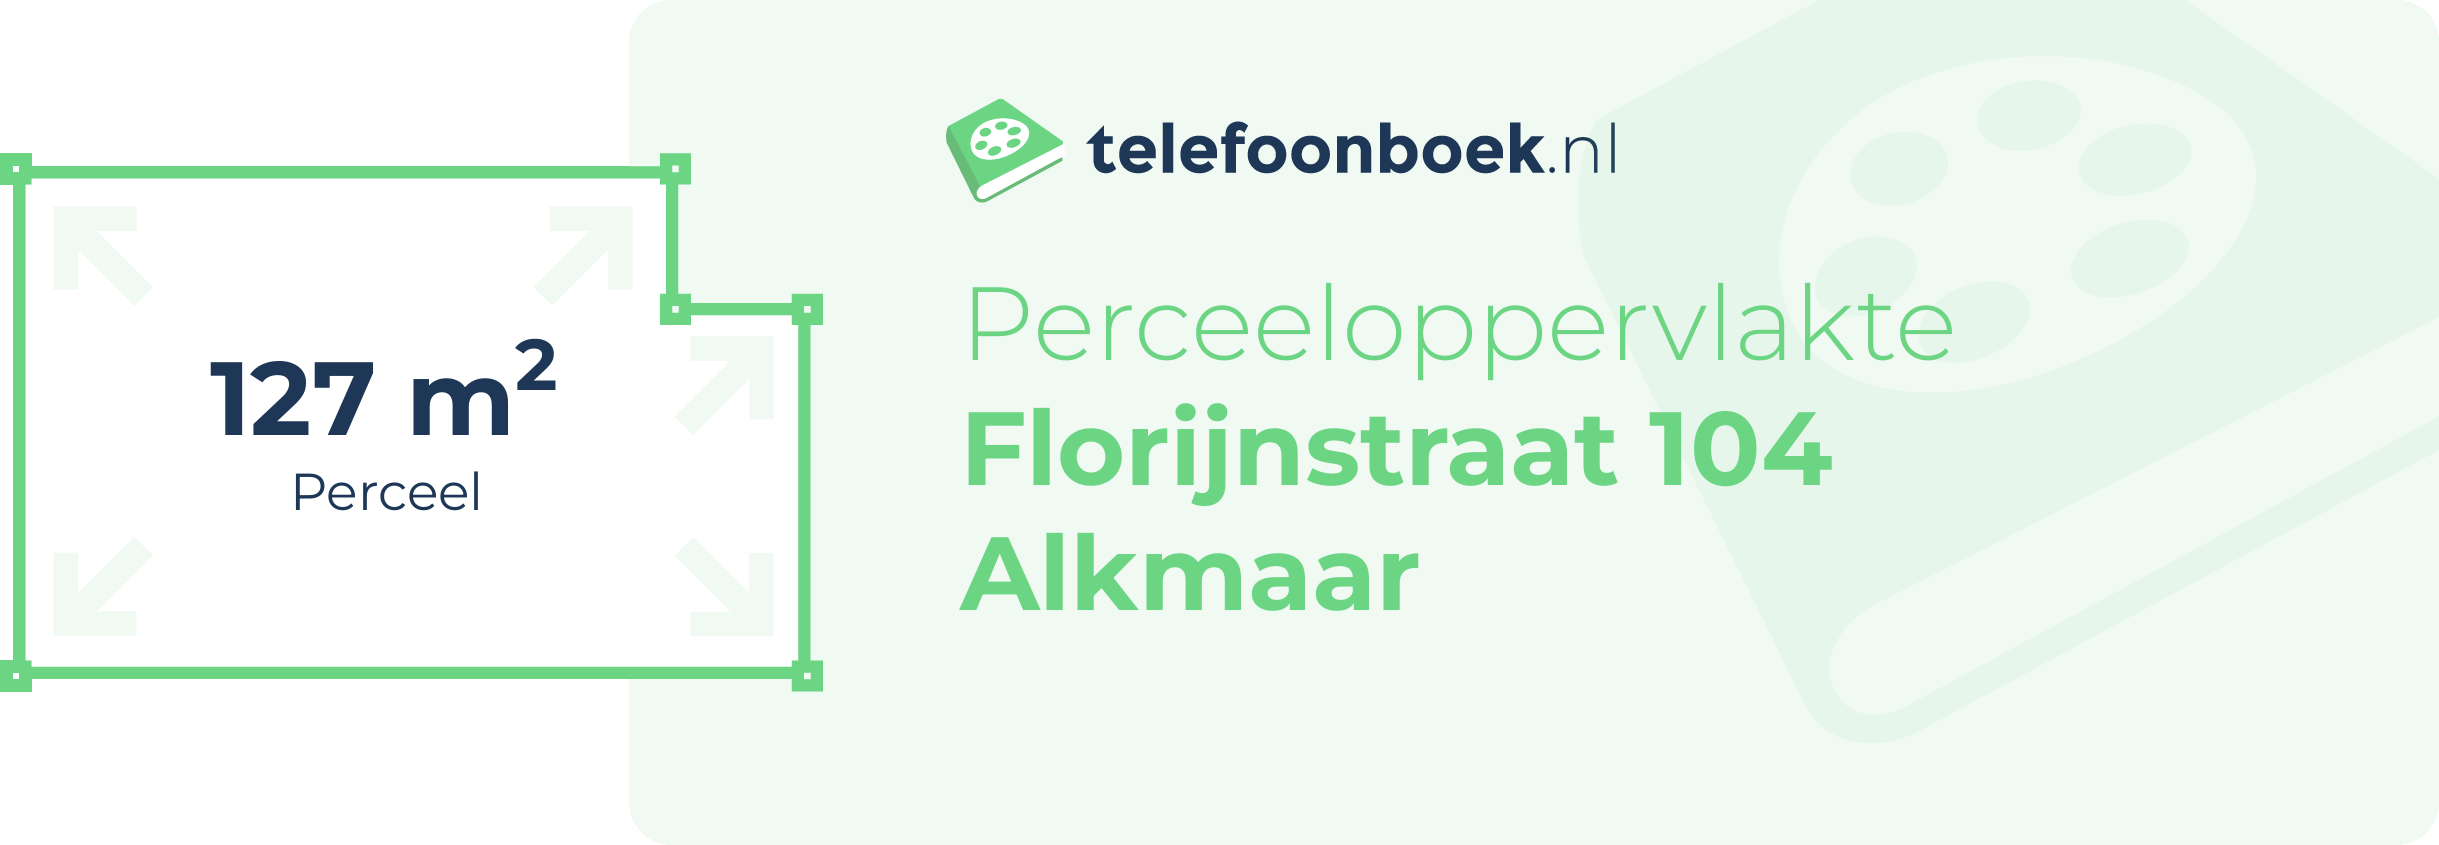 Perceeloppervlakte Florijnstraat 104 Alkmaar